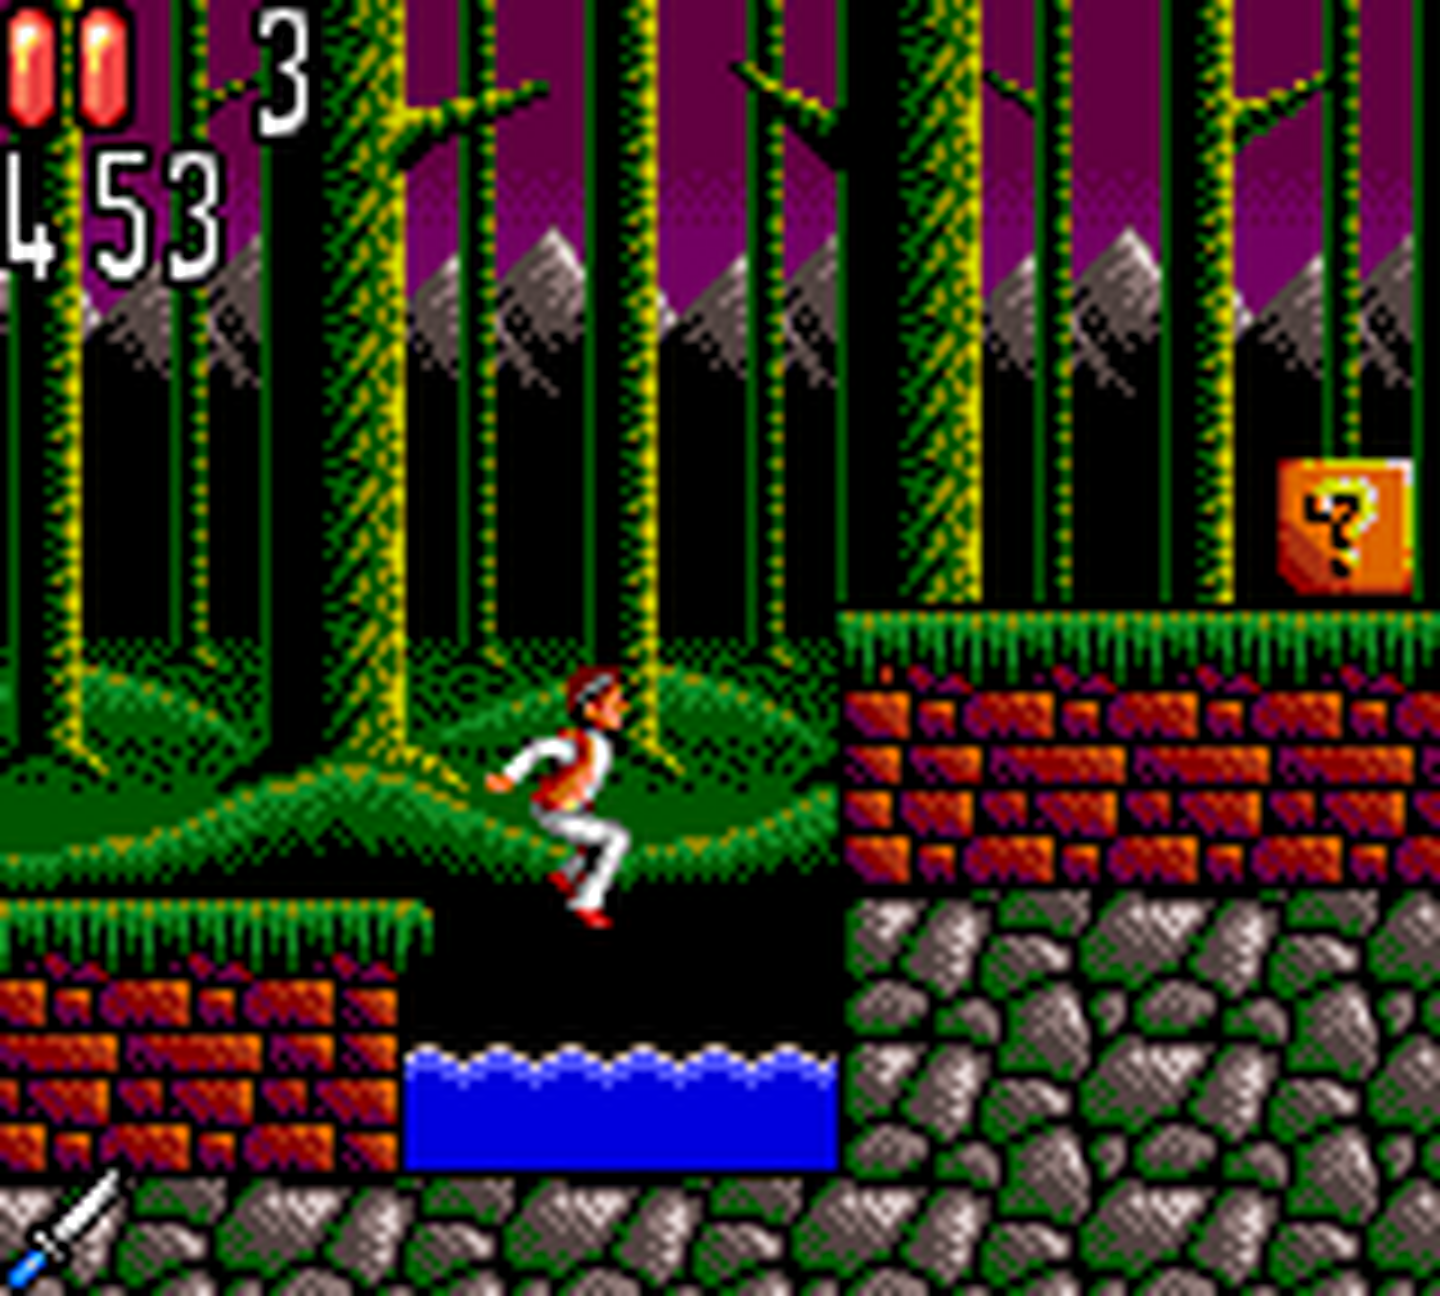 SMS GameBase Dracula_(Bram_Stoker's)_(US).gg Sony_Imagesoft_Inc. 1993